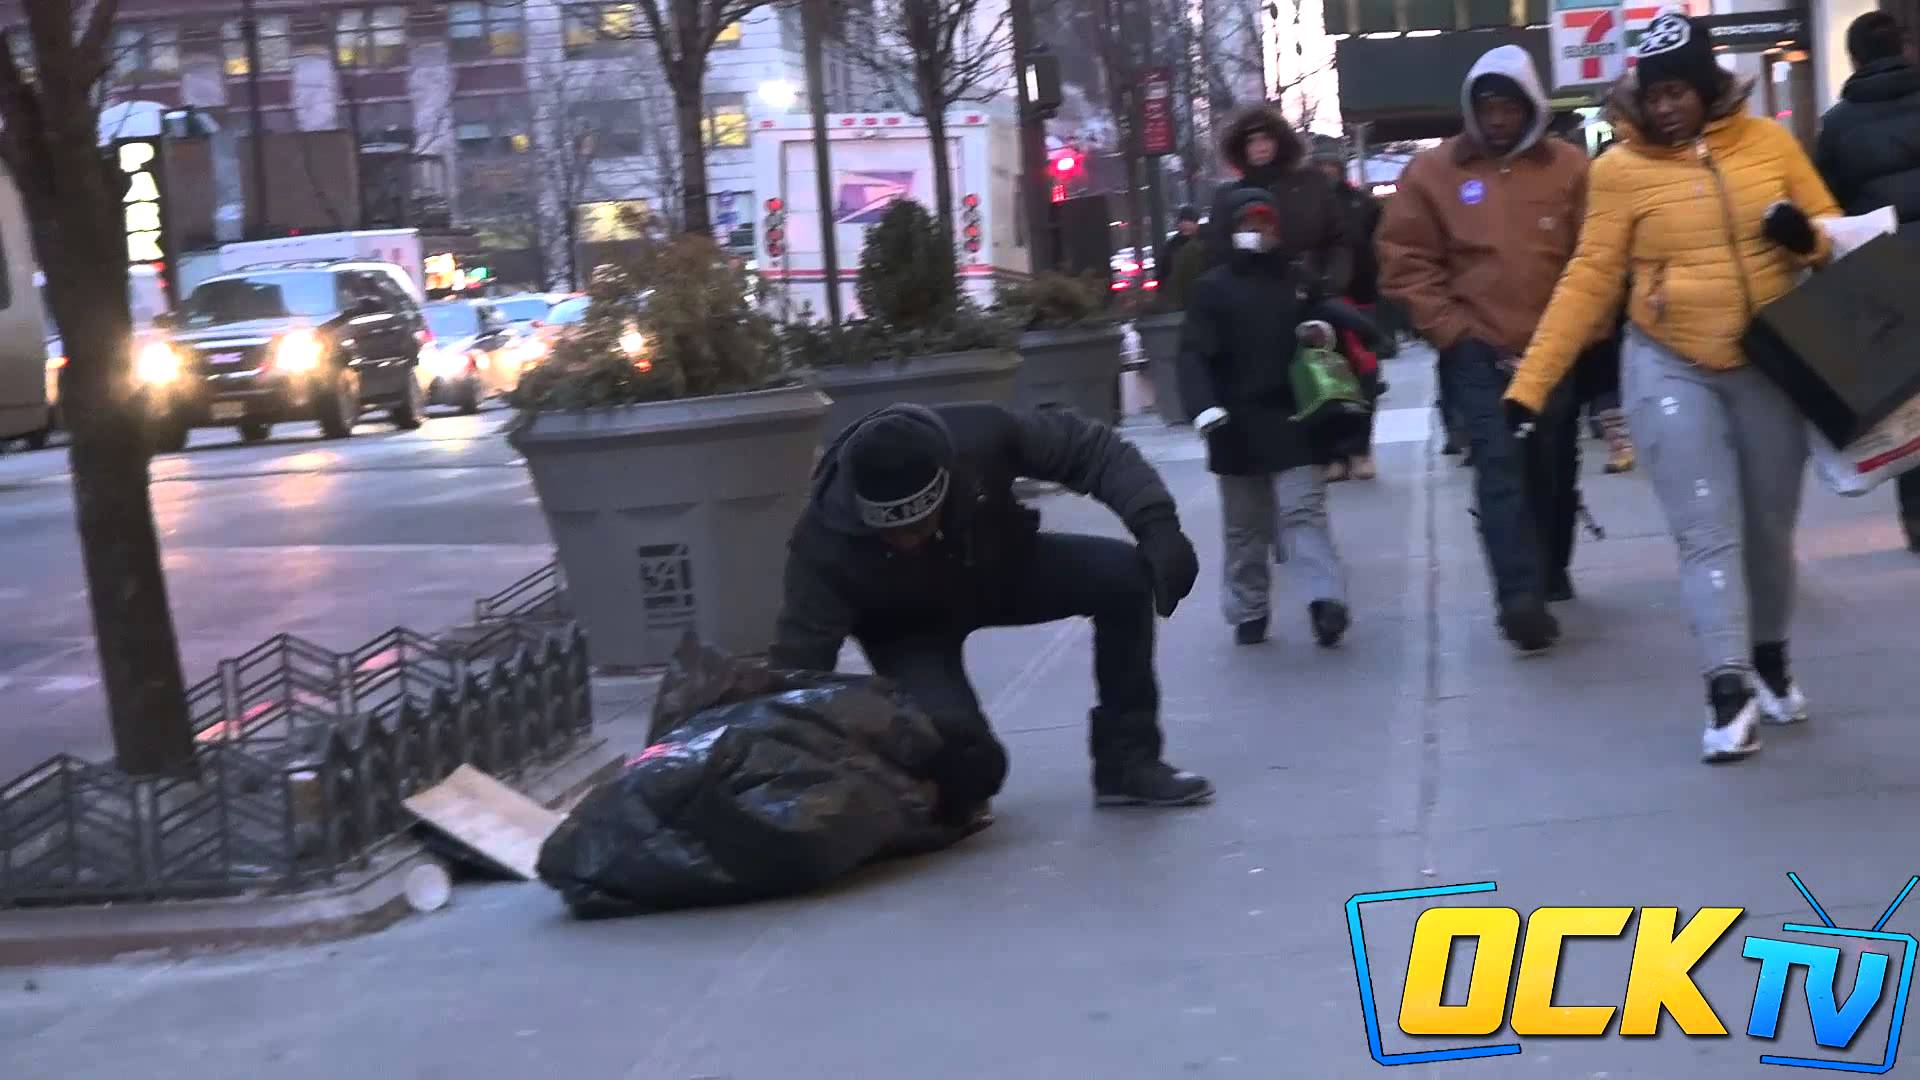 VIDEO: Skumji. Vienīgais, kurš palīdzēja salstošam puikam – bezpajumtniekam bija… (The Freezing Homeless Child!)